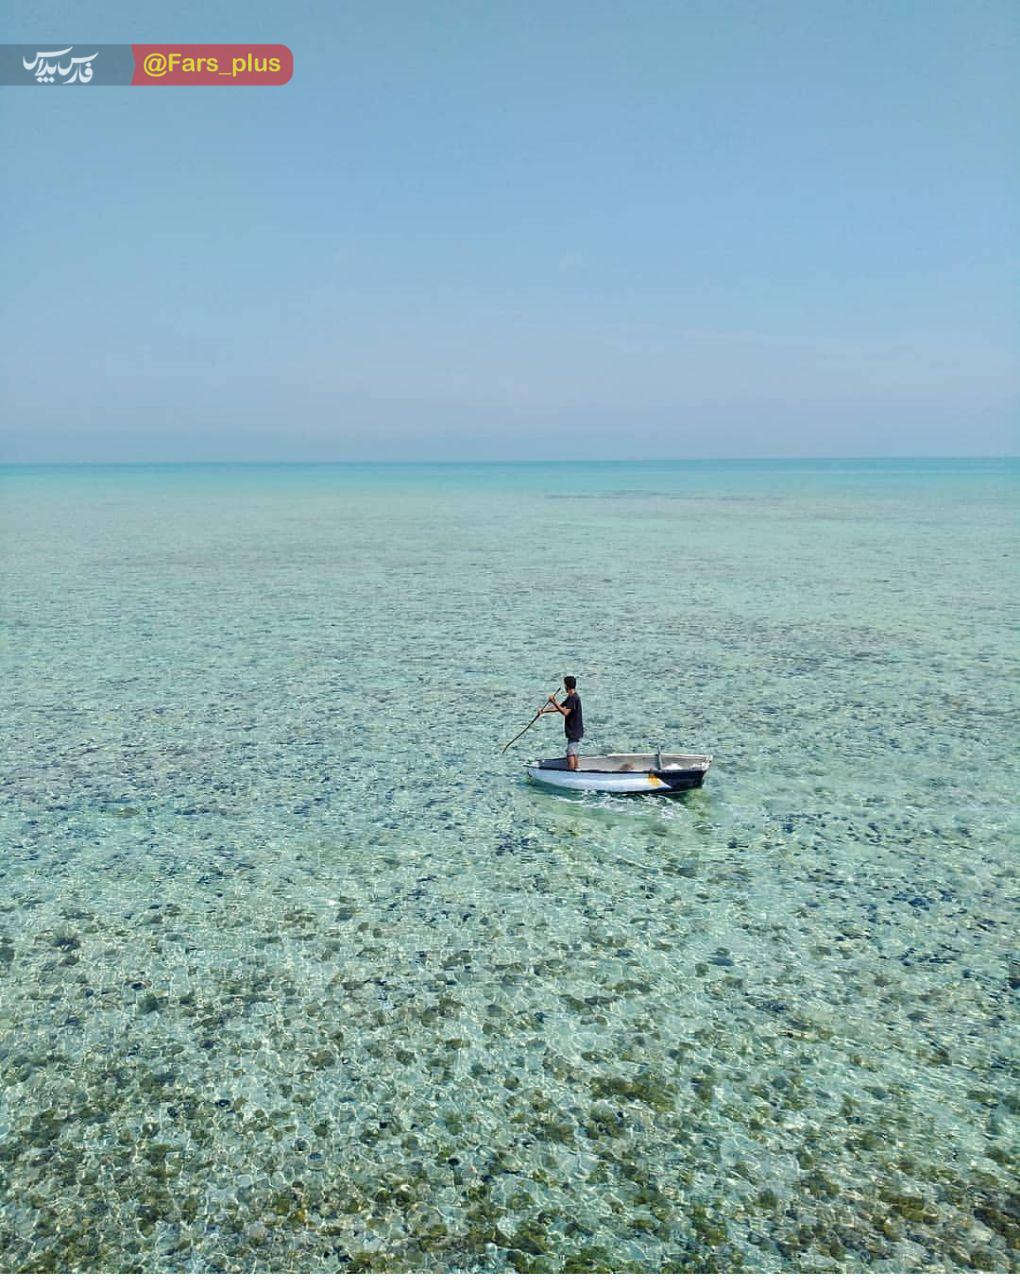 نمای دیدنی از جزیره مرجانی لاوان هرمزگان